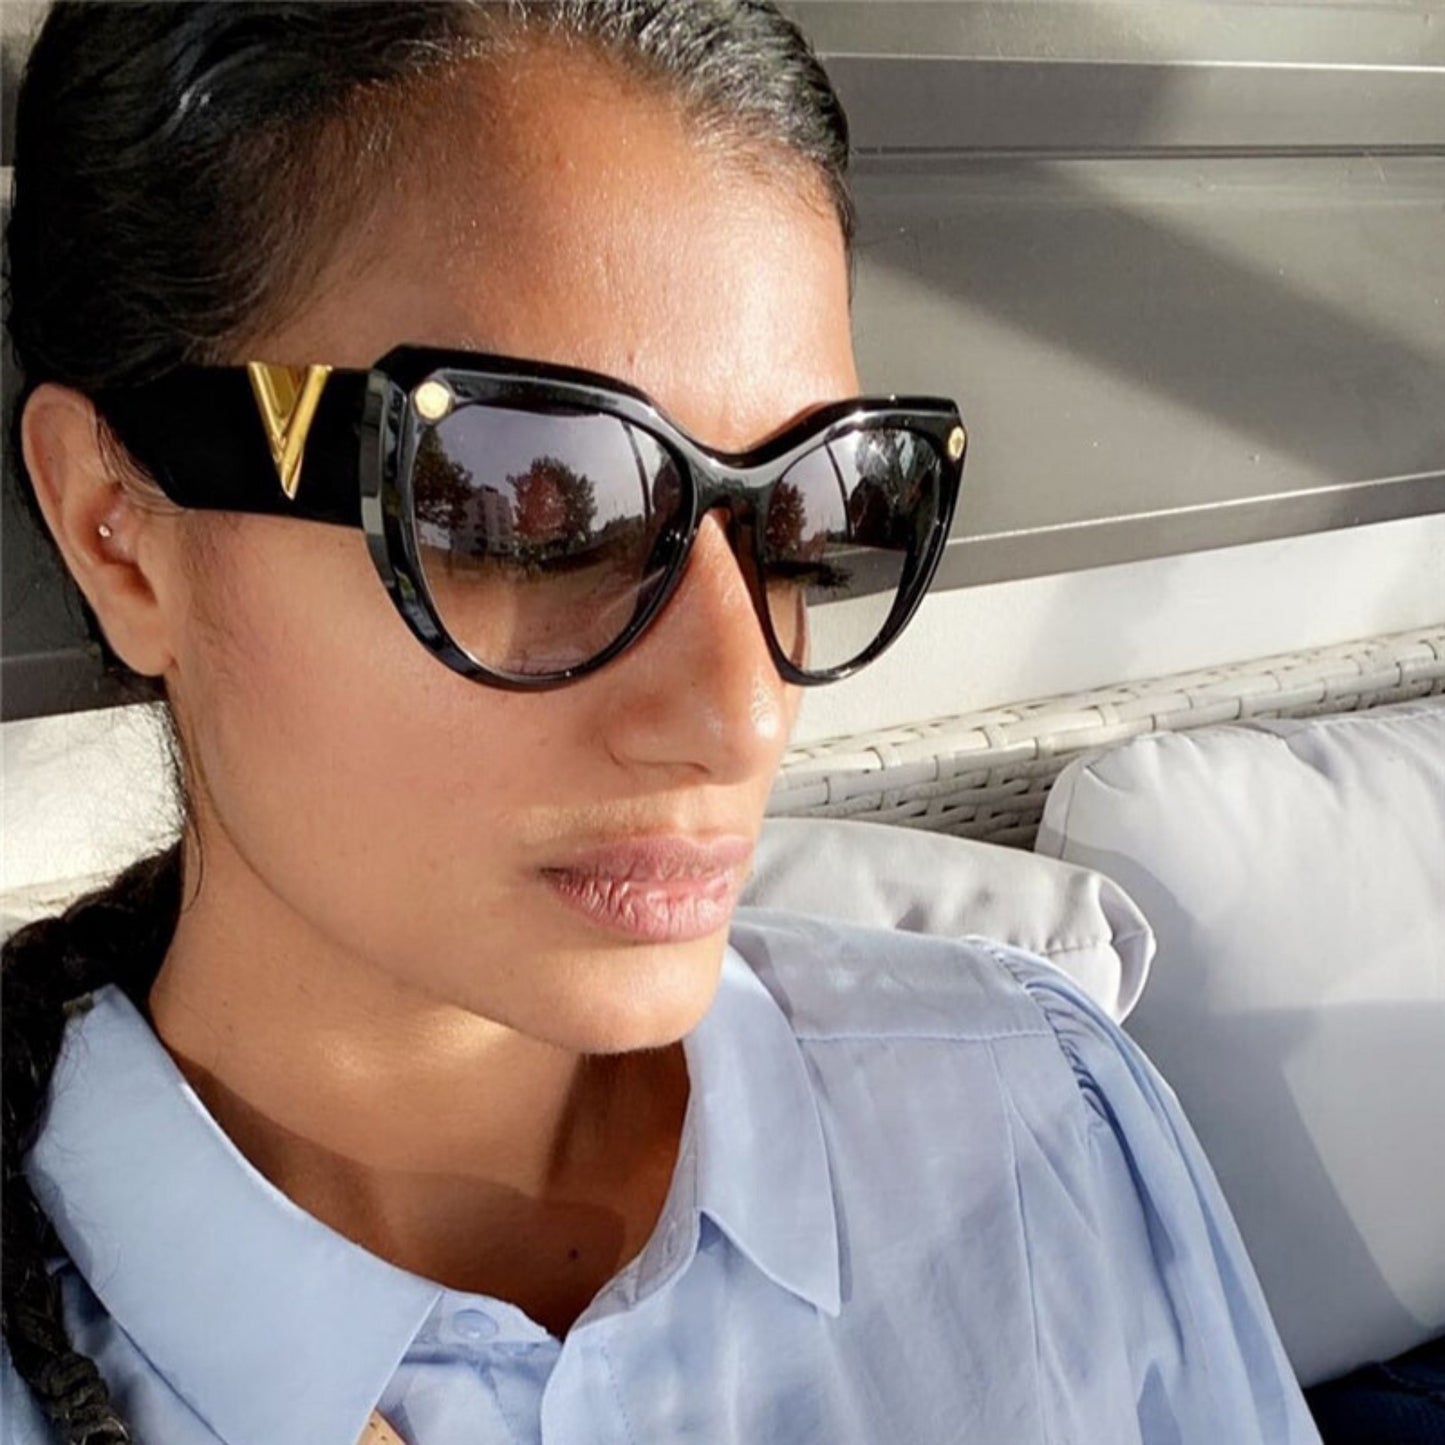 Luxury Oversized V-Shaped Cat Eye Sunglasses for Women | ULZZANG BELLA